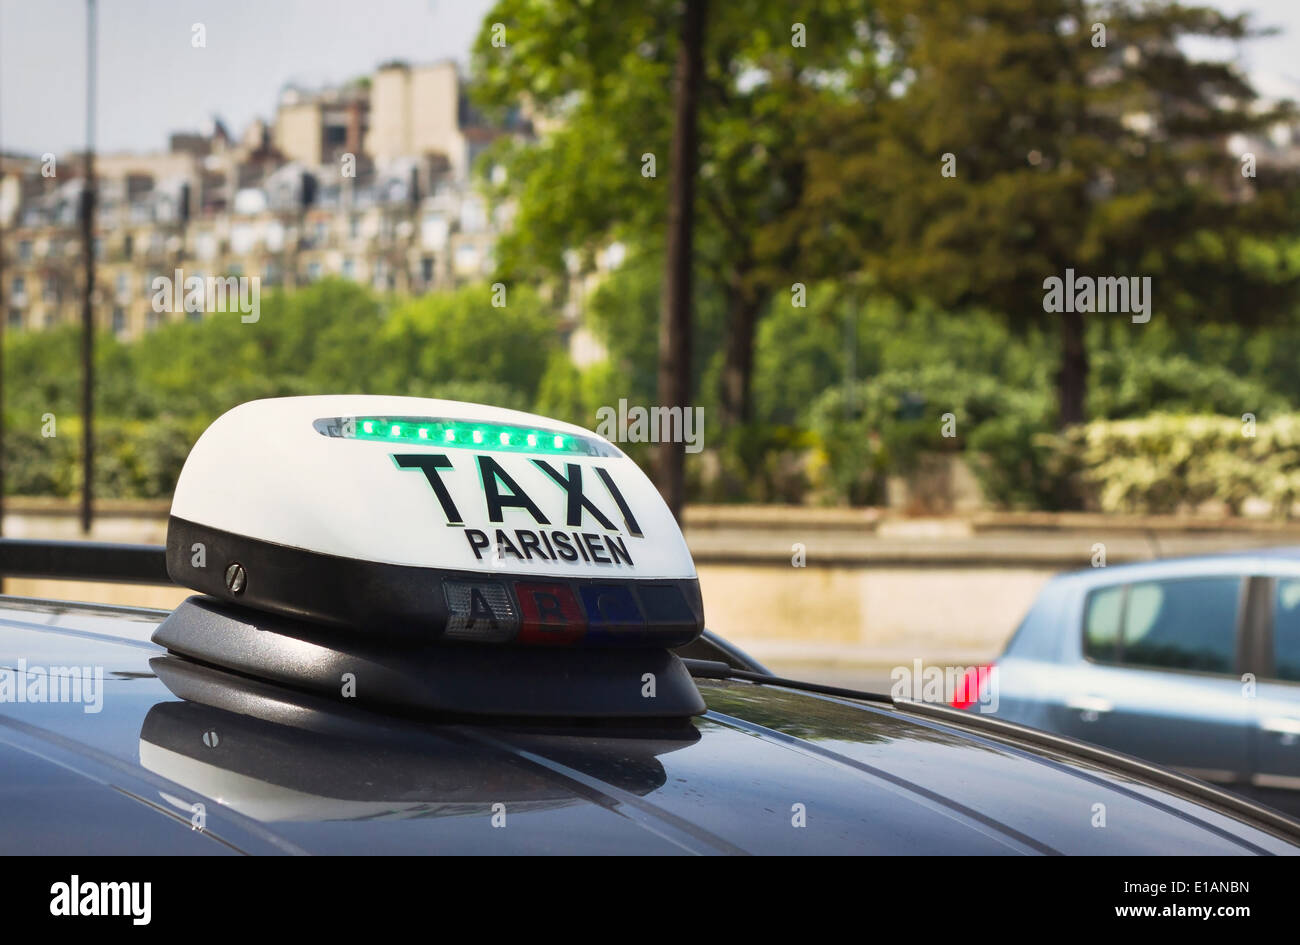 Kostenloses Taxischild Mit Grünem Licht In Paris Frankreich Stockfoto und  mehr Bilder von Auto - iStock